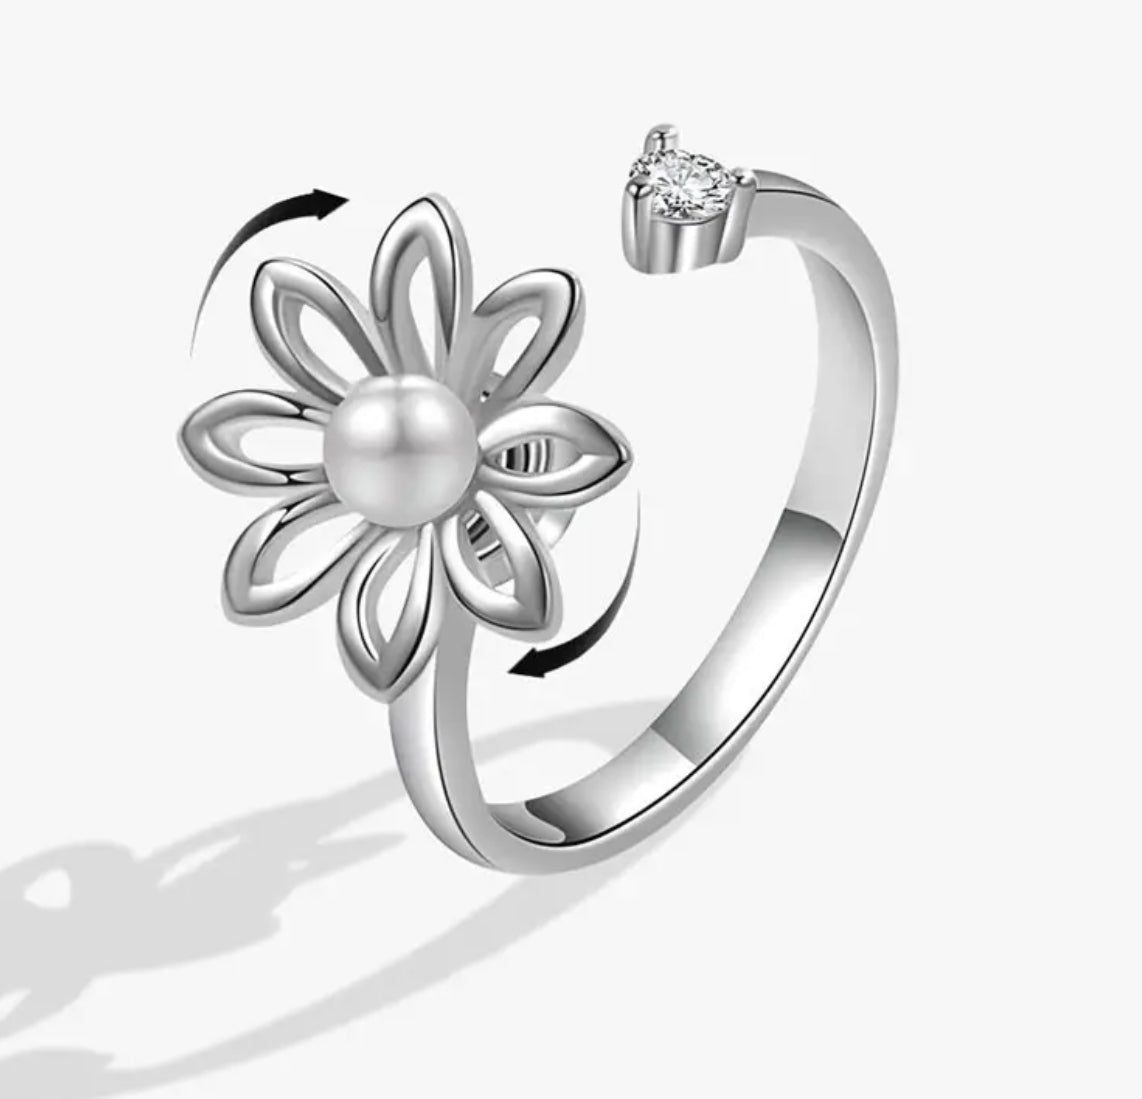 Ring - Adjustable Fidget Ring - Pearl Daisy